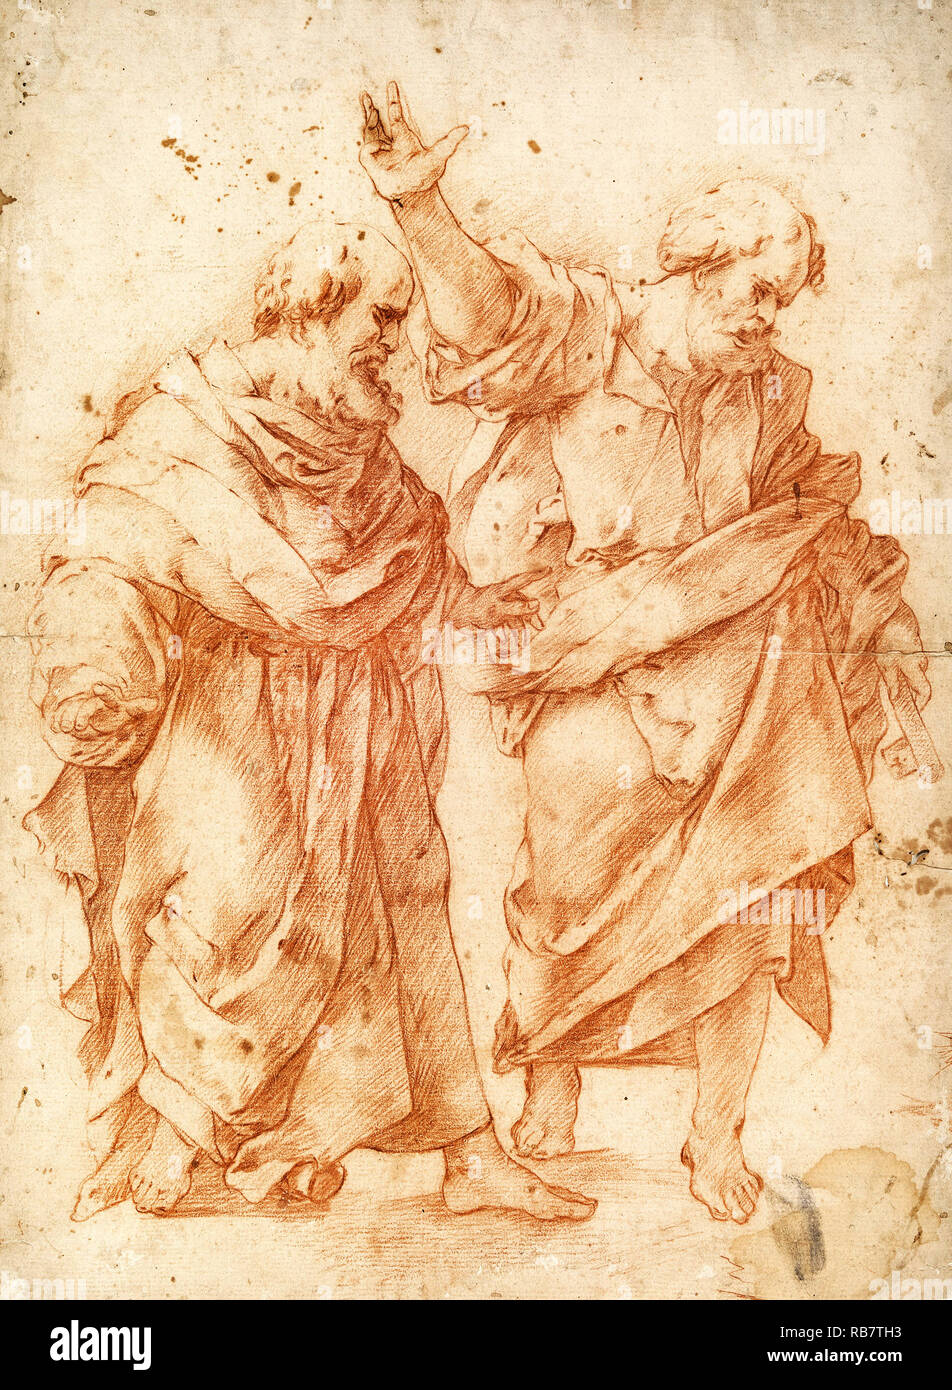 Luca Giordano, due apostoli, circa 1650 gesso rosso su carta color crema, disegno, Cooper Hewitt, Smithsonian Design Museum, STATI UNITI D'AMERICA. Foto Stock